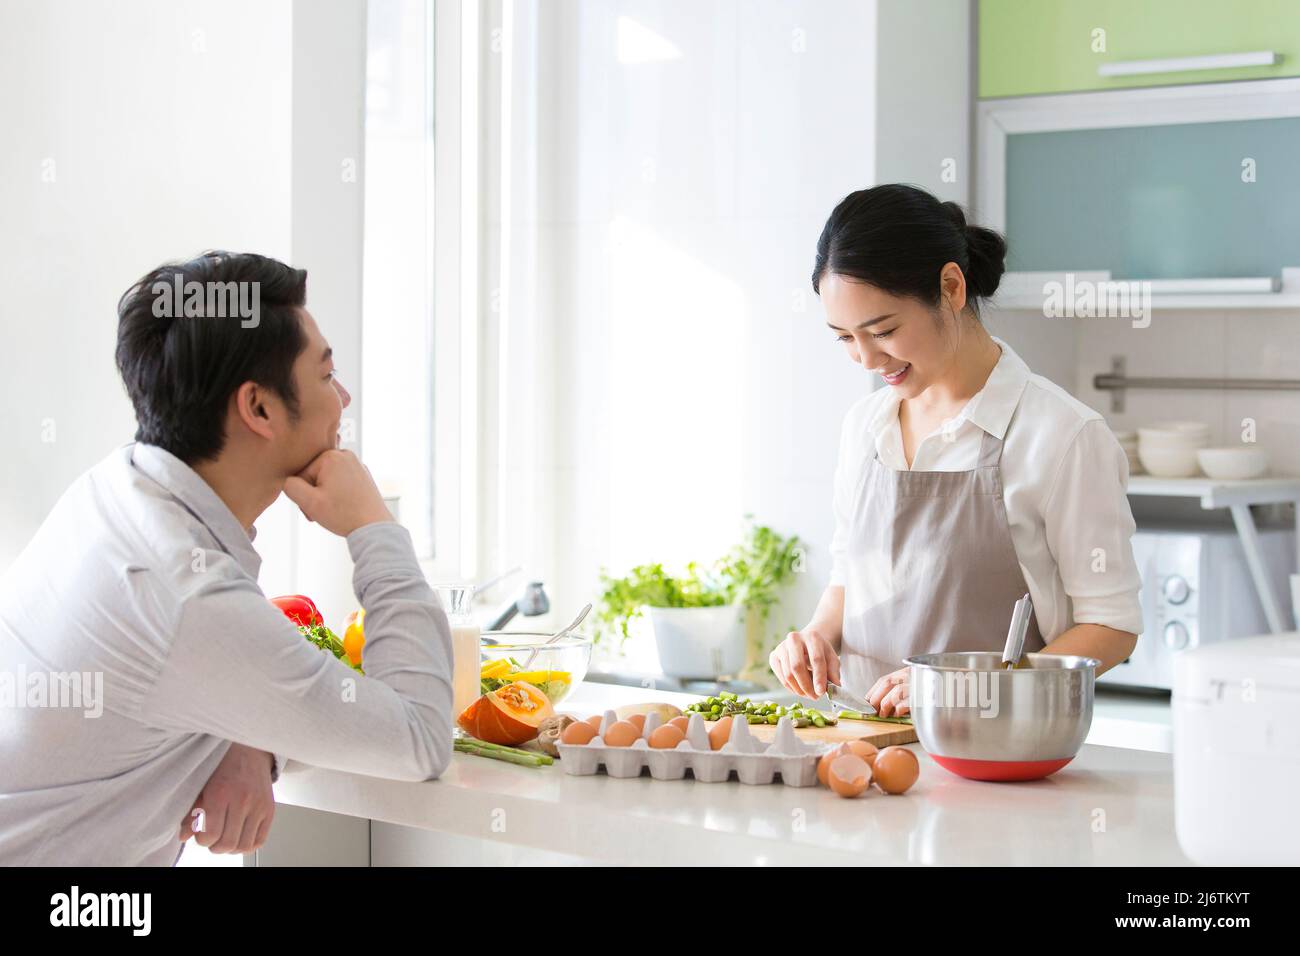 In der Familienküche kochte ein junges Paar zusammen. Ehemann blickte liebevoll auf Frau, die Gemüse hackt - Stock Foto Stockfoto